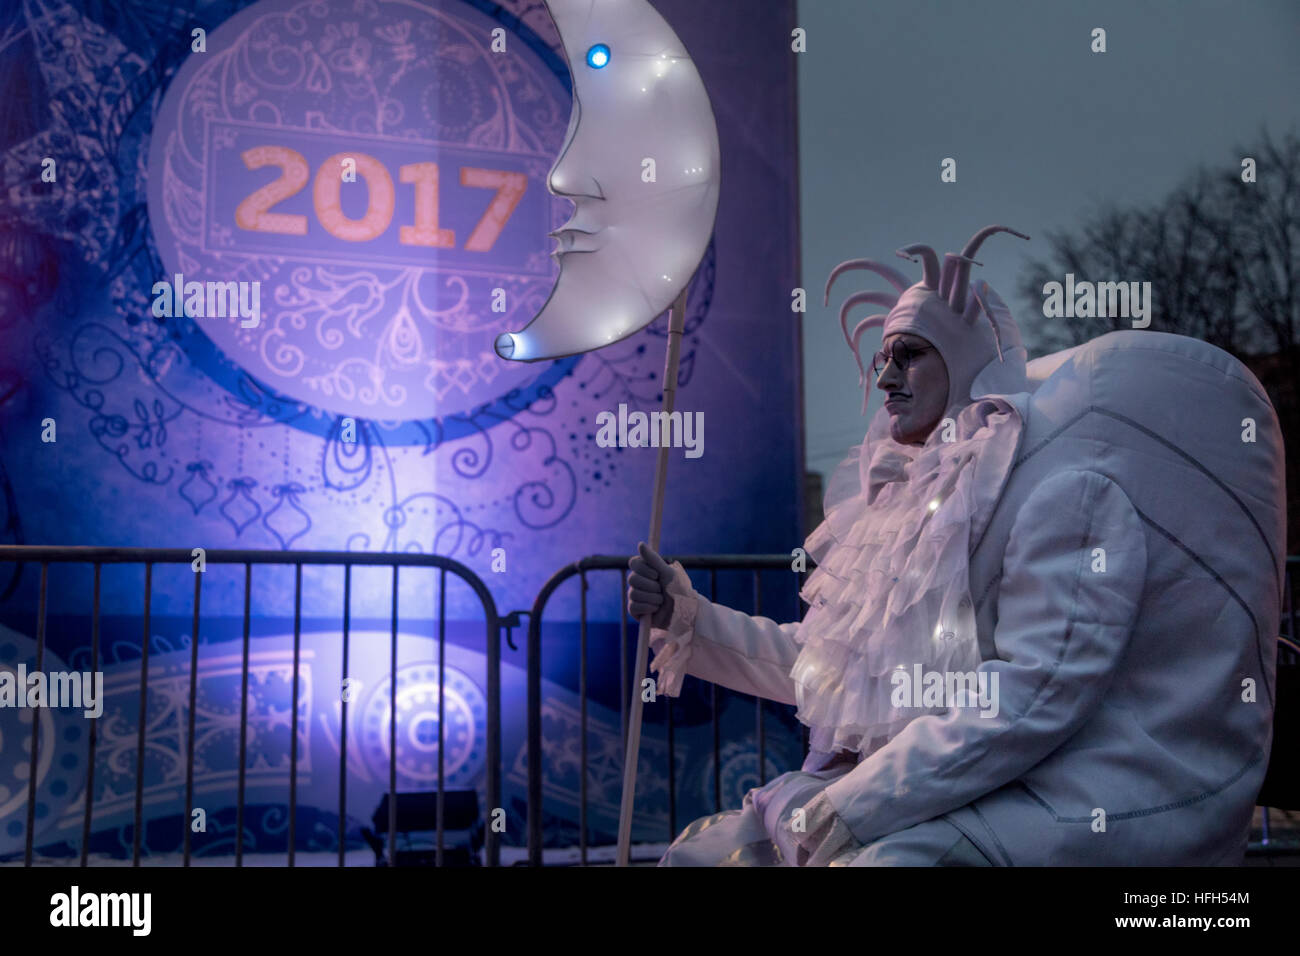 Moskau, Russland. 31. Dezember 2016, Straßentheater Leistung Schauspieler während der Feier 2017 neue Jahr im Bezirk Moskau, Russland Stockfoto